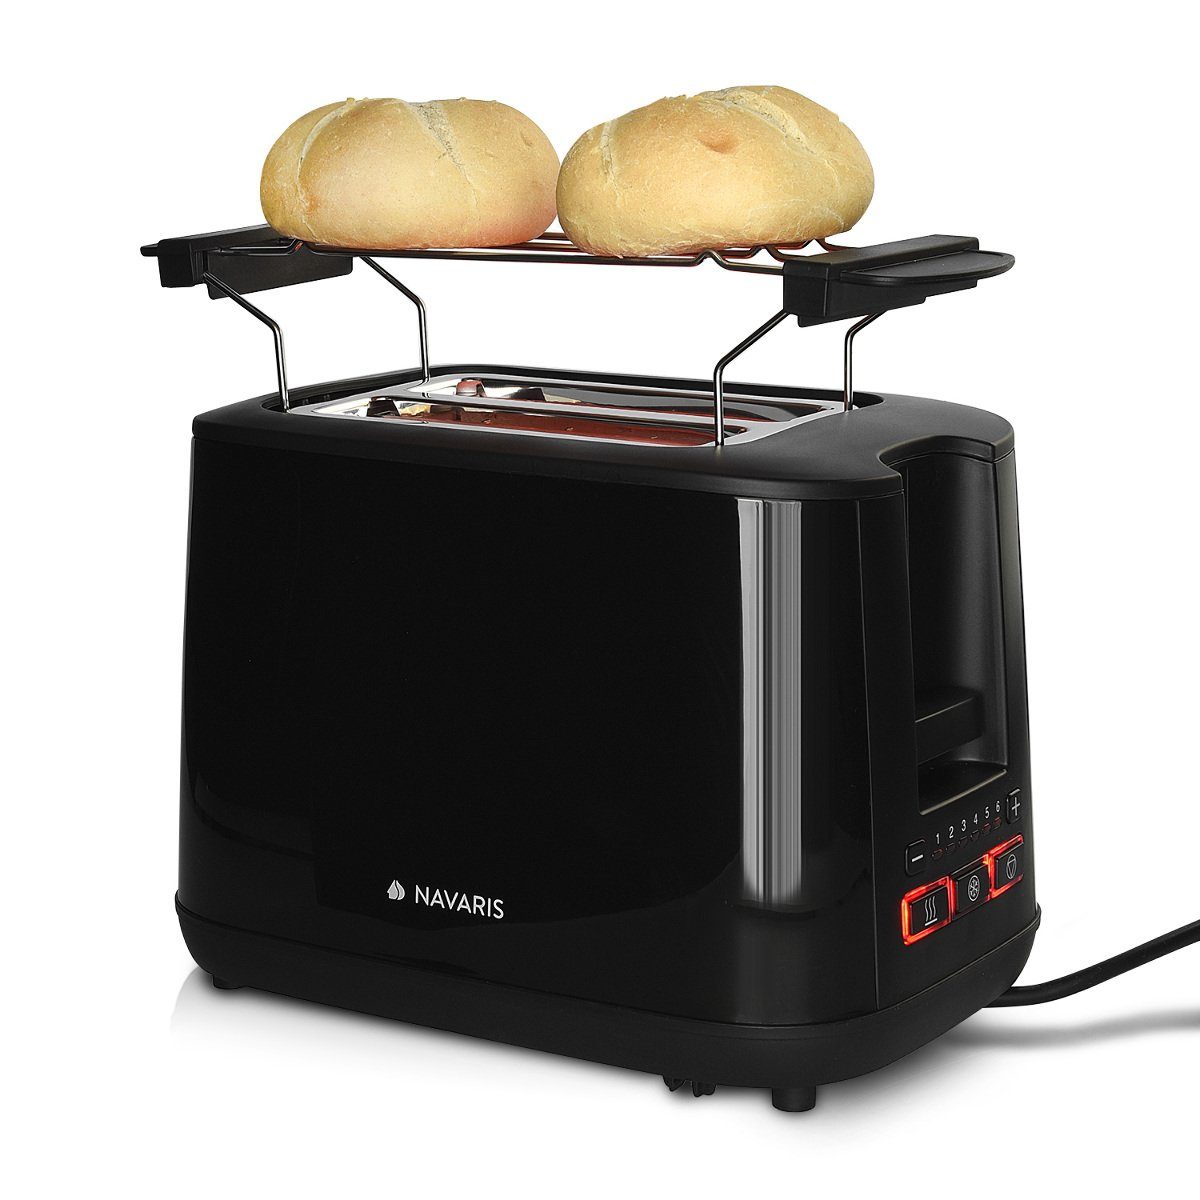 Navaris Toaster Doppelschlitz-Toaster mit Brötchenaufsatz - 6 Stufen